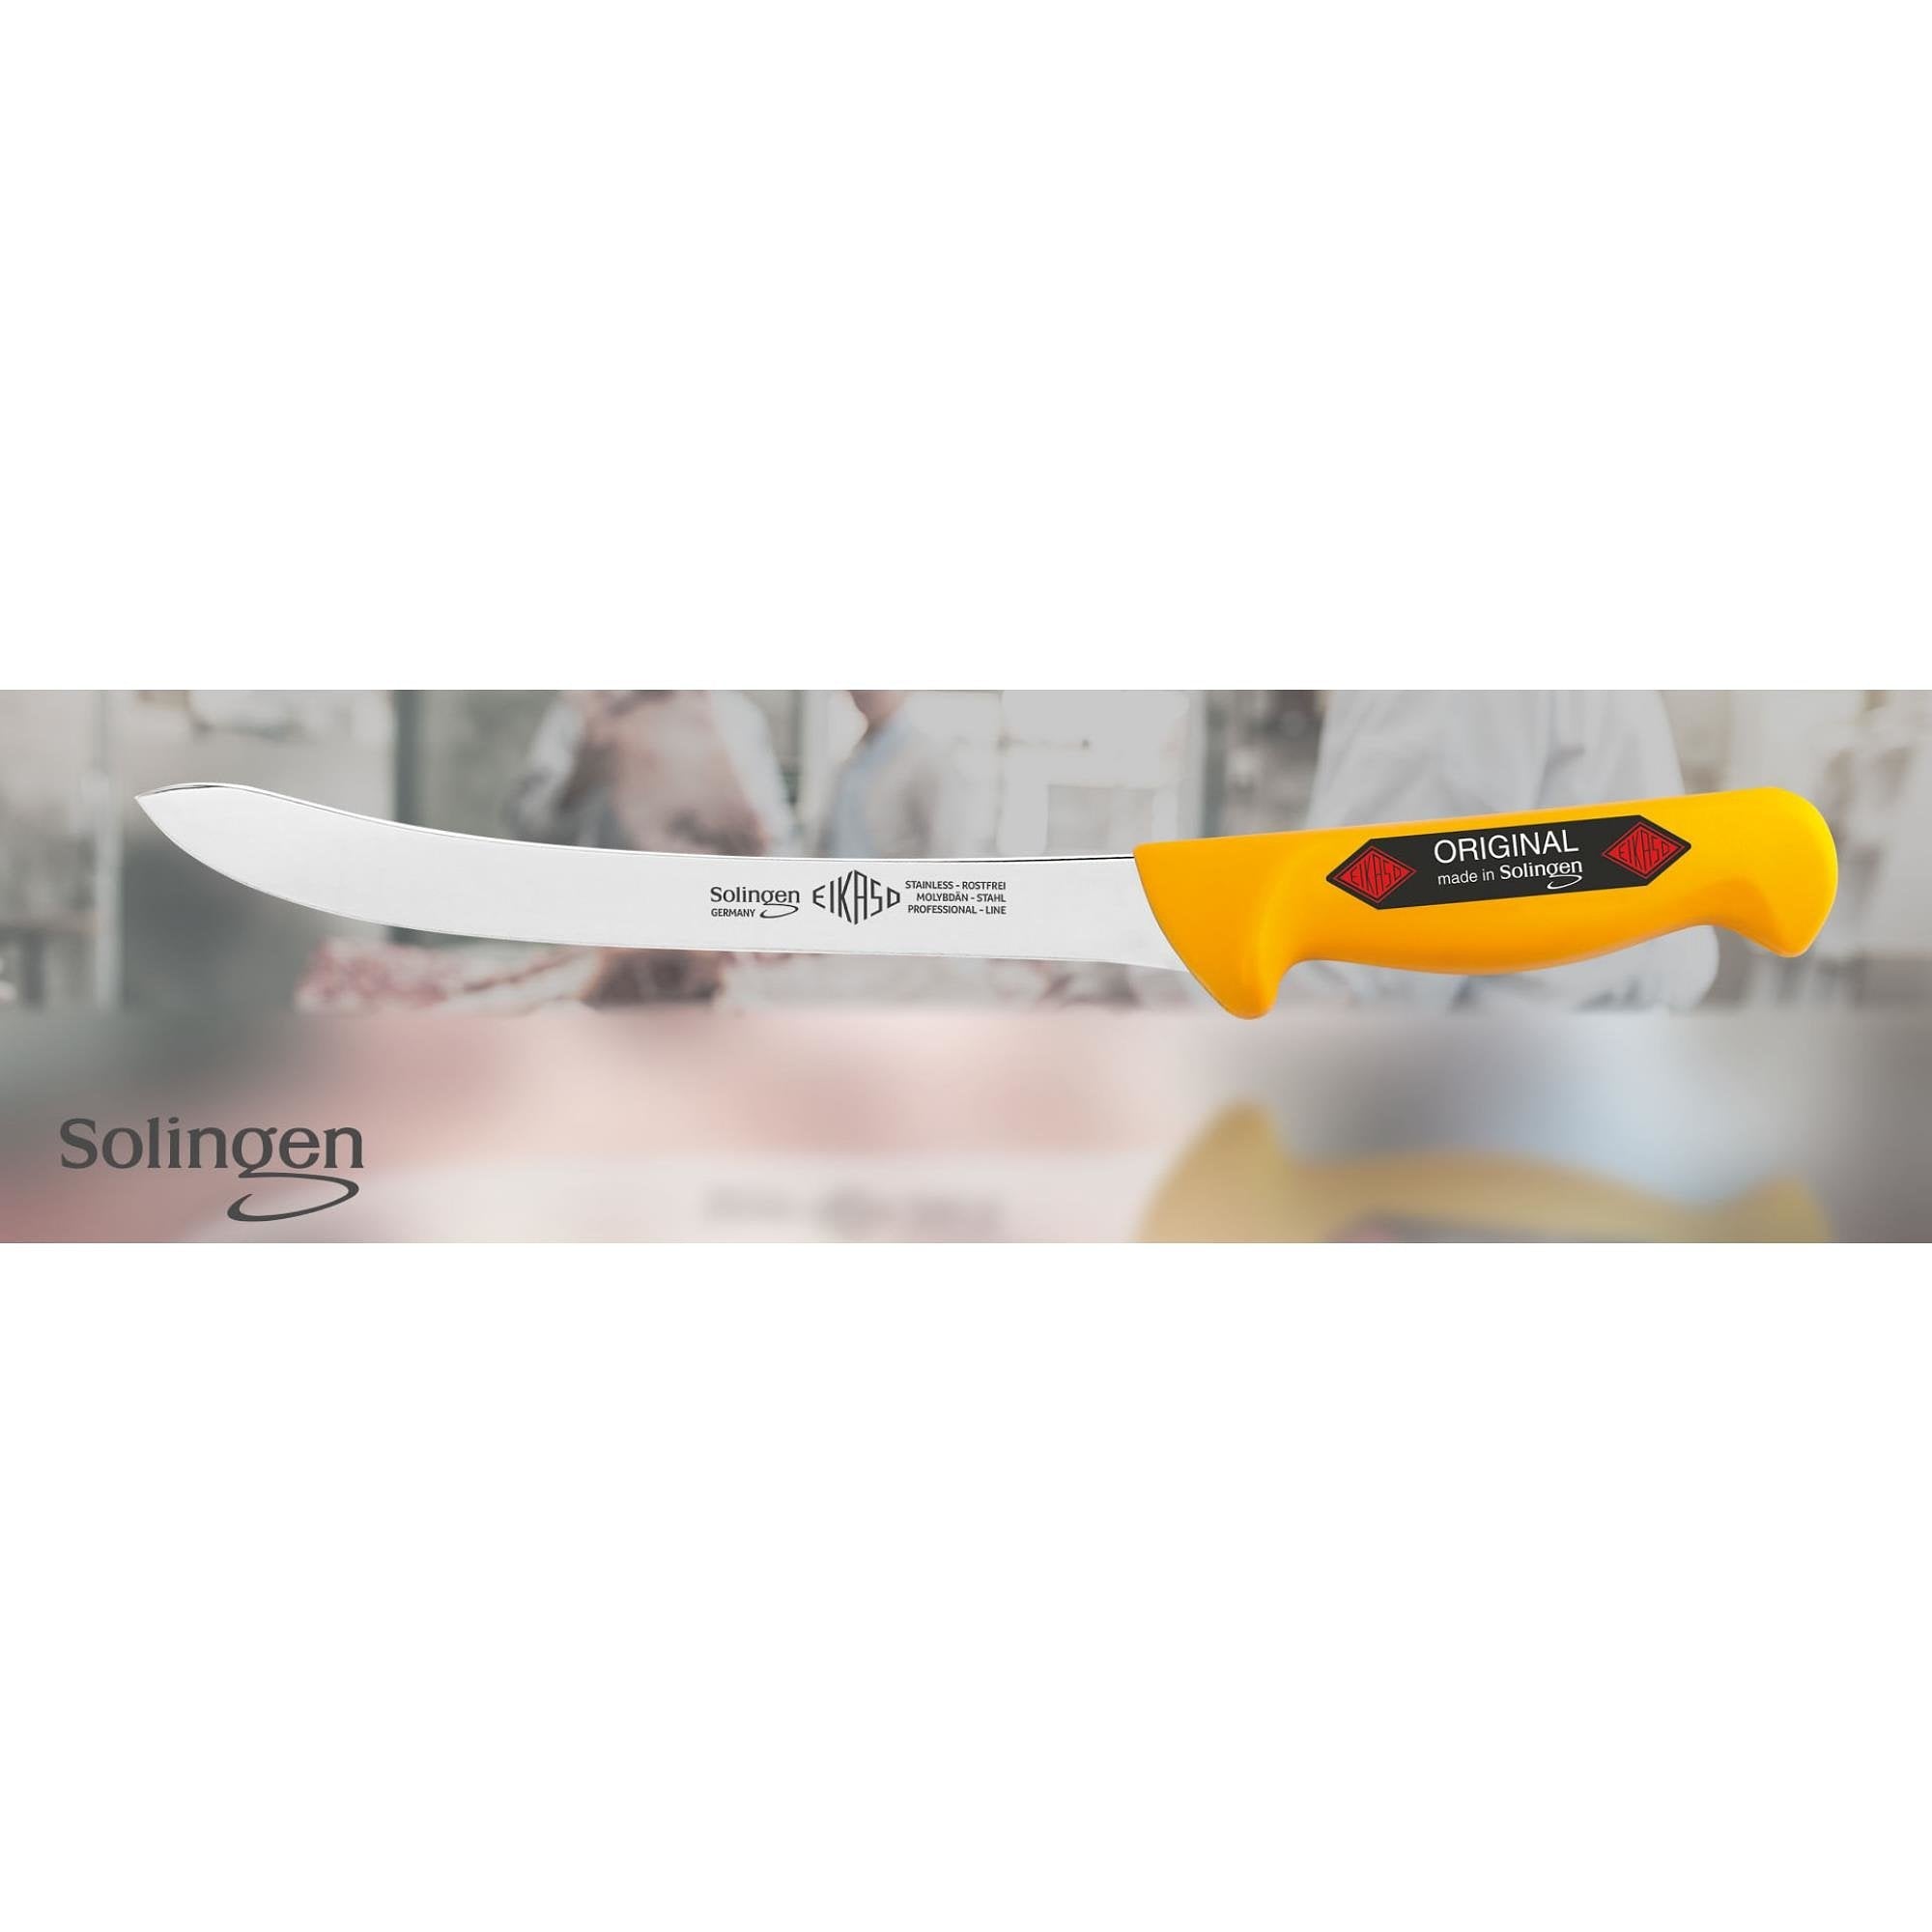 Eikaso Solingen Flexibel 21 cm Fileermes - Precisie Snijden - Ergonomisch Geel Handvat